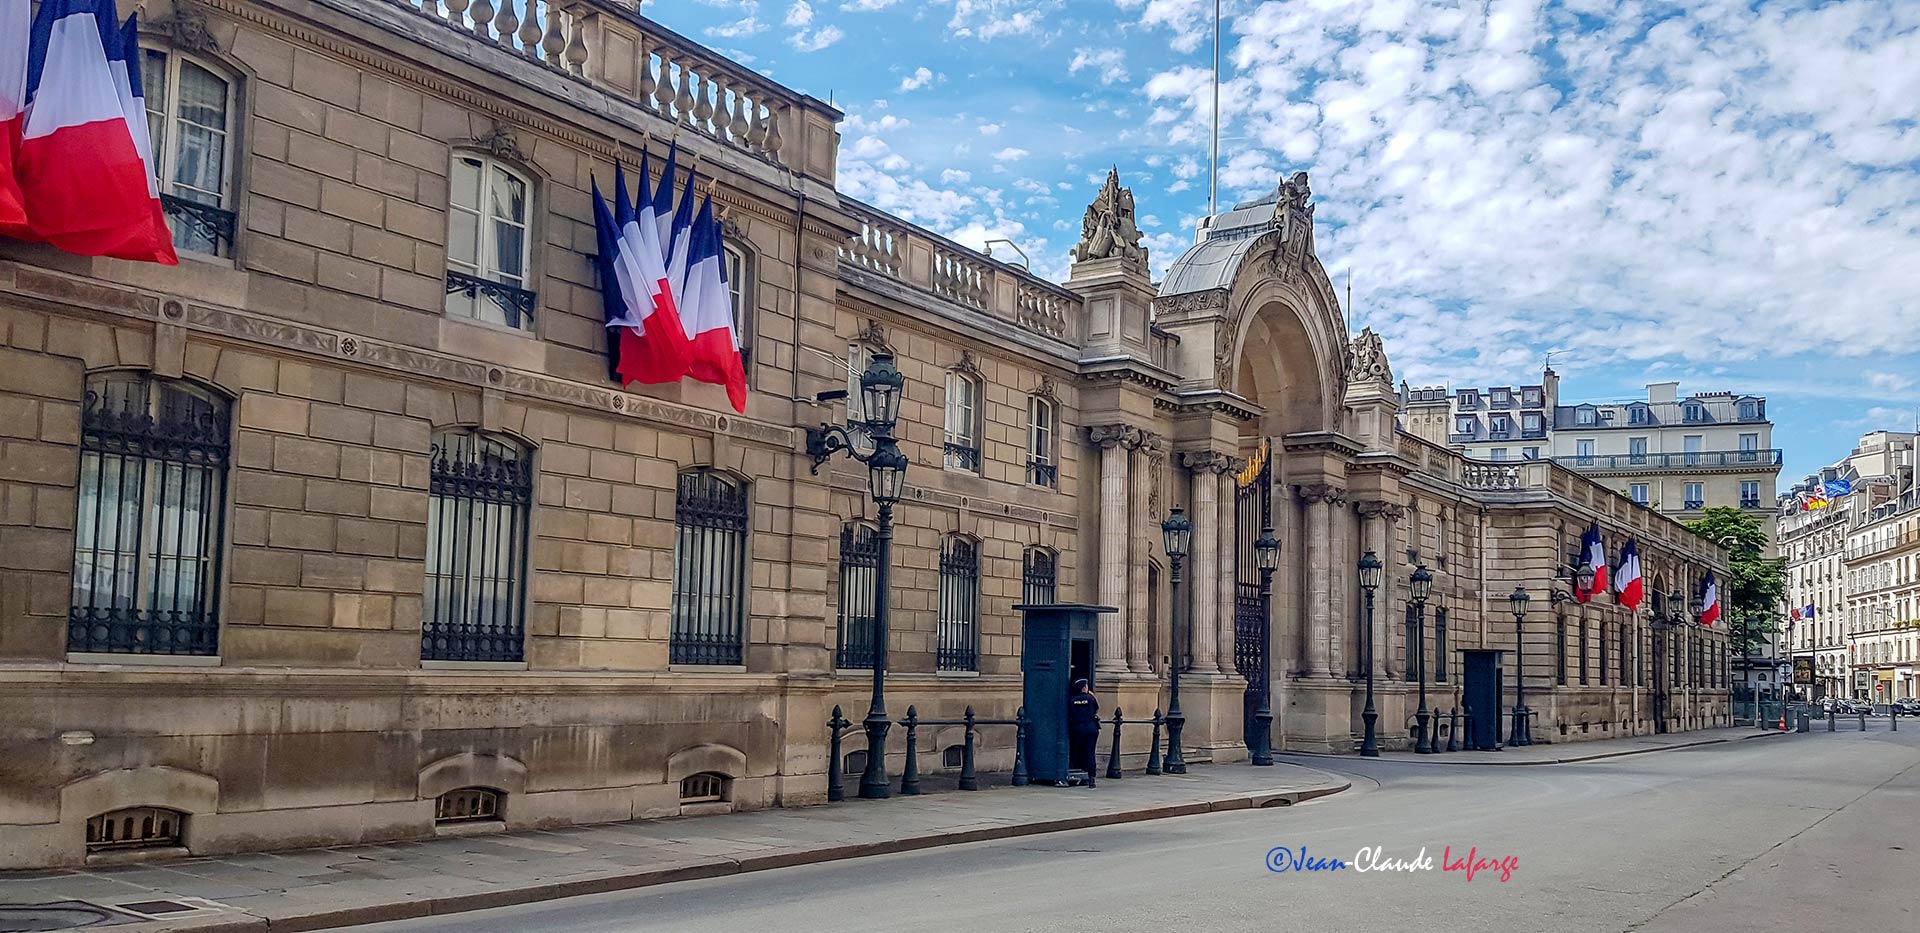 Le Palais présidentiel de l'Elysée, ancien hôtel particulier parisien, est situé au Nᵒ 55 de la rue du Faubourg Saint-Honoré, dans le 8ᵉ arrondissement de Paris. 